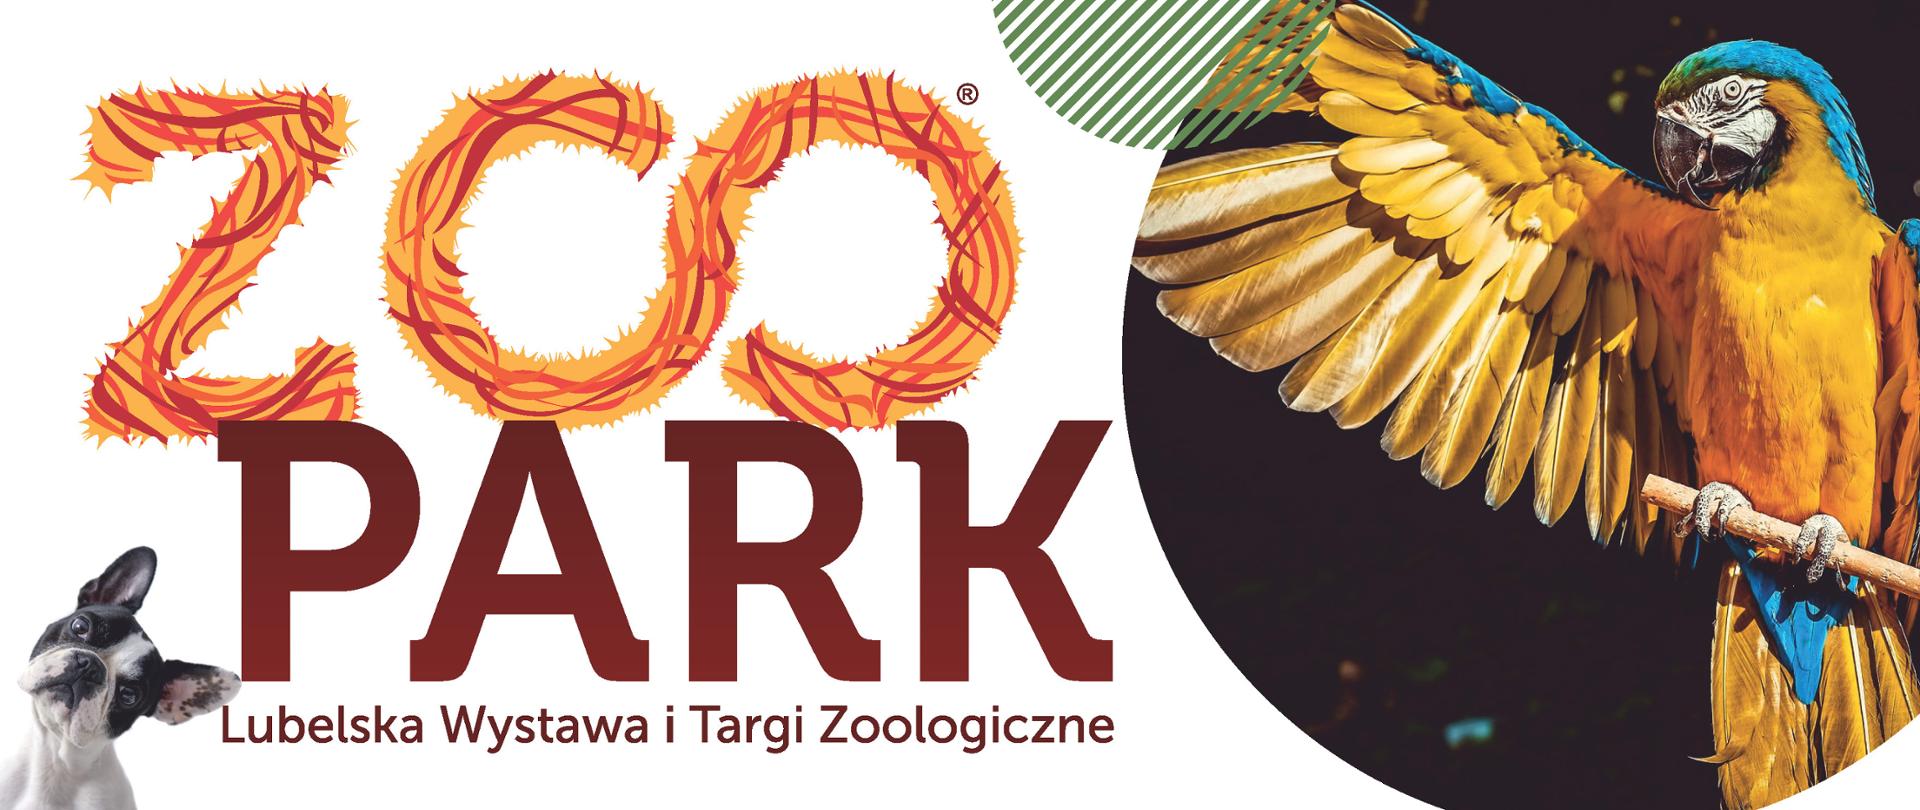 Na plakacie zachęcają oraz Zapraszają do udziału w Lubelskiej Wystawie i Targach Zoologicznych ZOOPARK, które odbędą się w dniach 7-8 października 2023 roku.